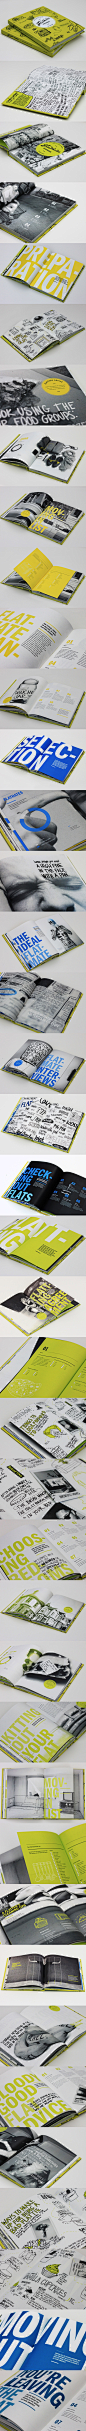 画册设计 平面 排版 版式 design book #采集大赛# #平面#【之所以灵感库】